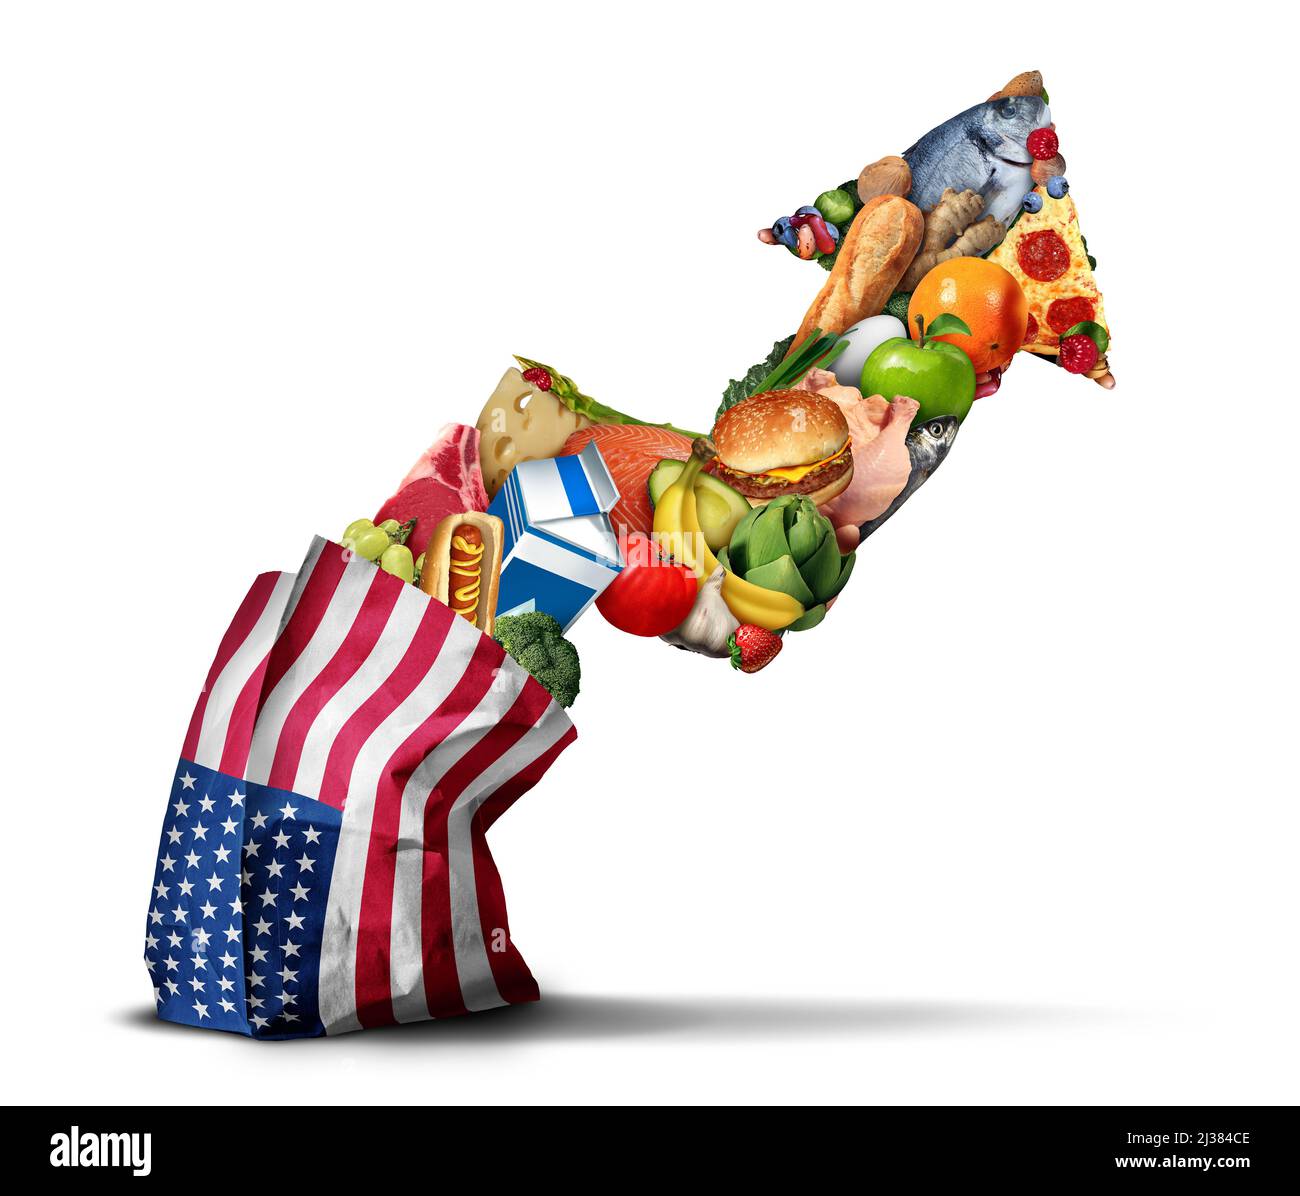 El aumento de los precios de los alimentos en Estados Unidos y el aumento del costo de los alimentos estadounidenses como concepto de crisis financiera inflacionaria y el aumento de los costos de las comidas. Foto de stock